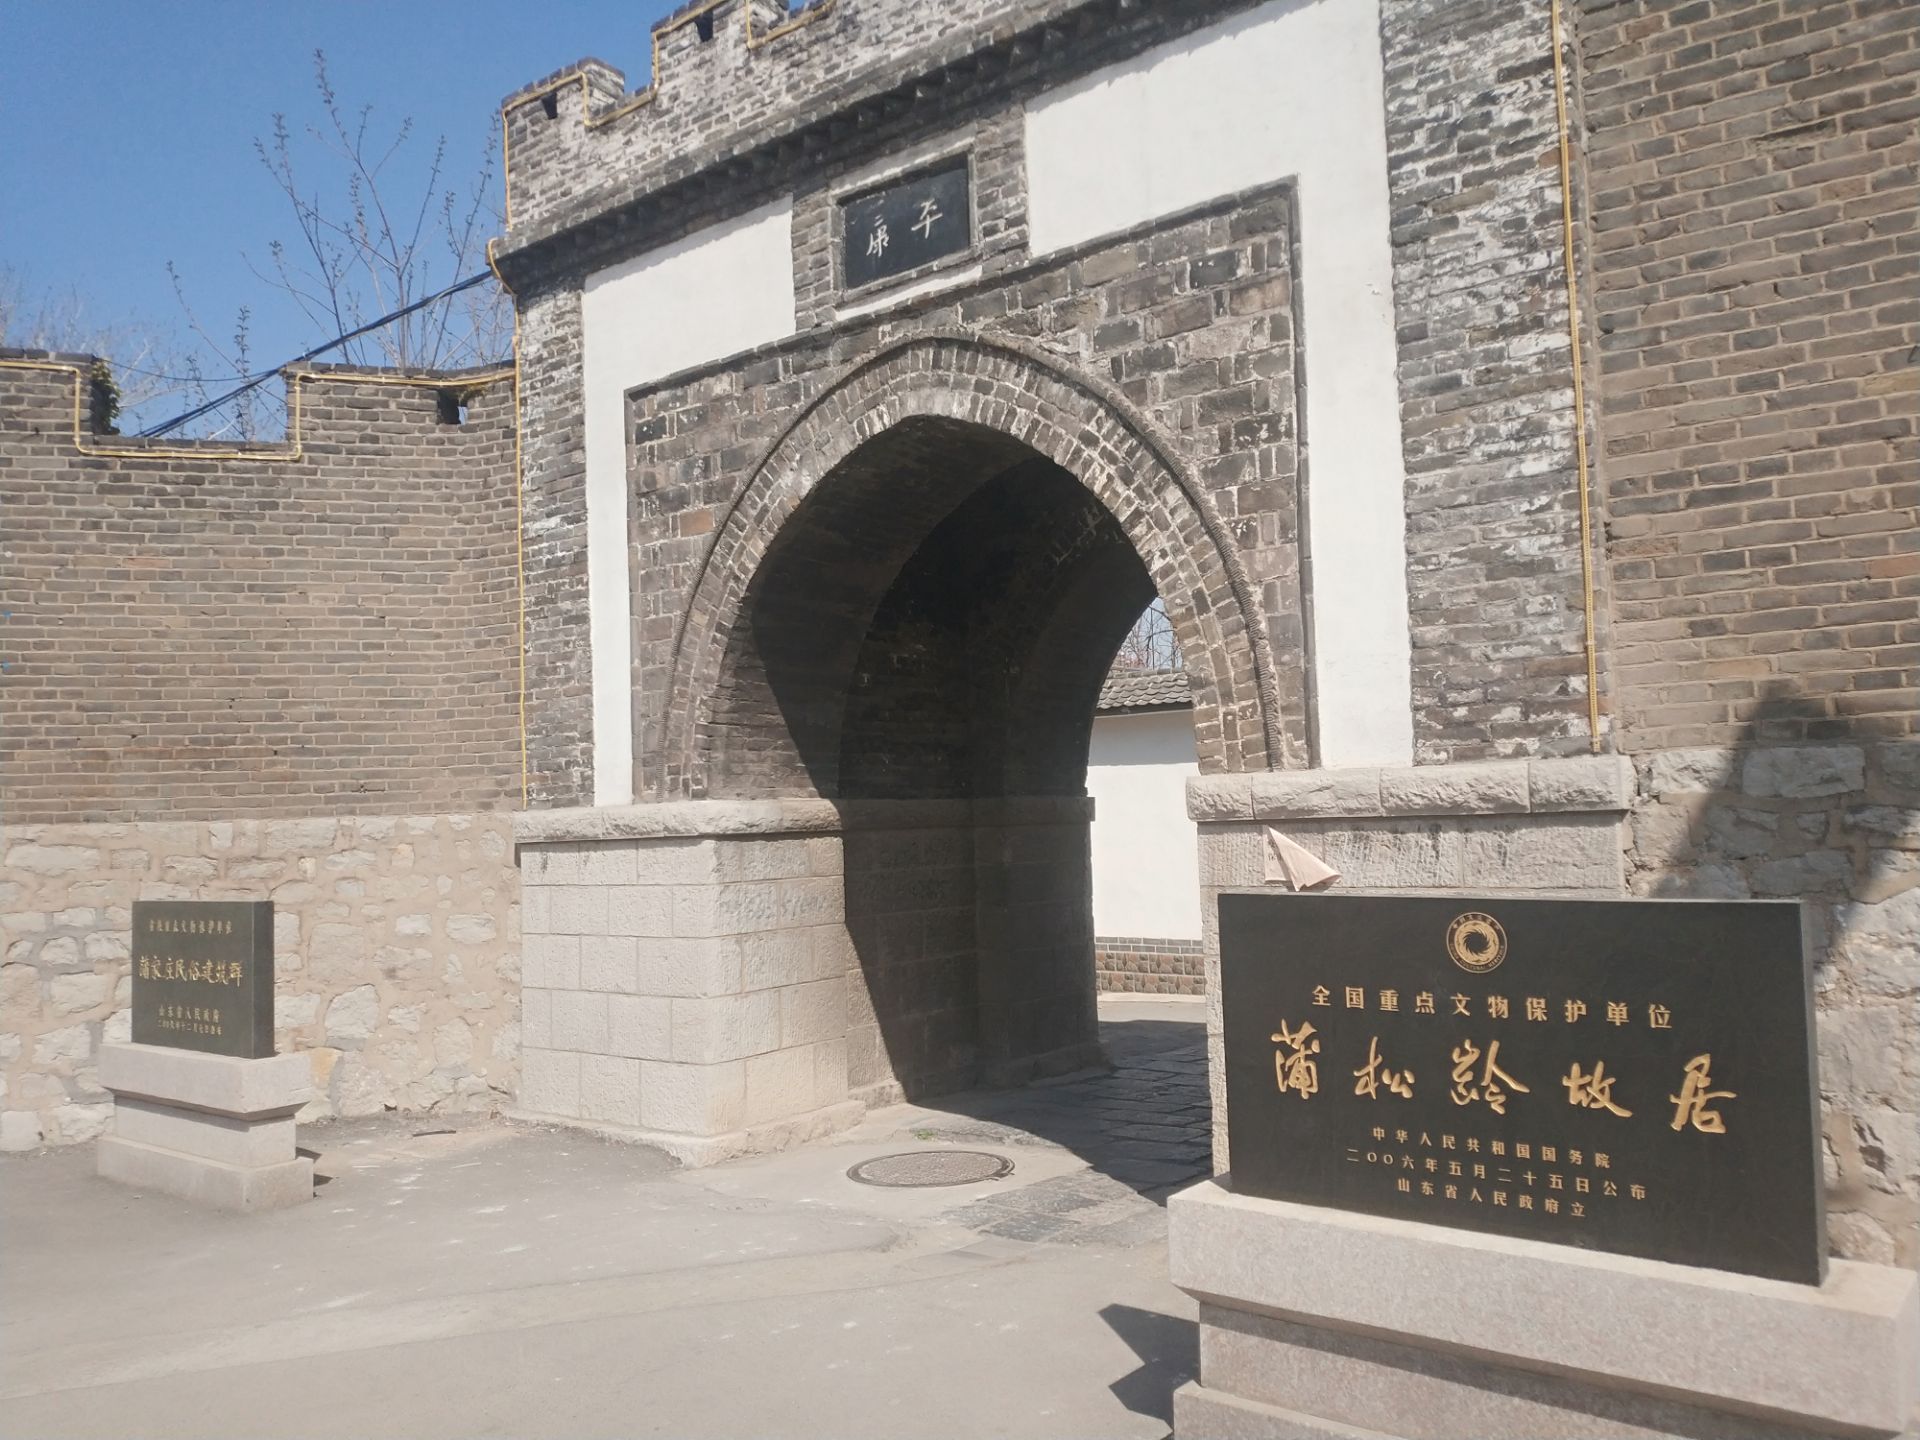 蒲松龄纪念馆，在淄川区蒲家庄，是为纪念世界短篇小说之王蒲松龄而设立的文化名人纪念馆。蒲松龄纪念馆是在